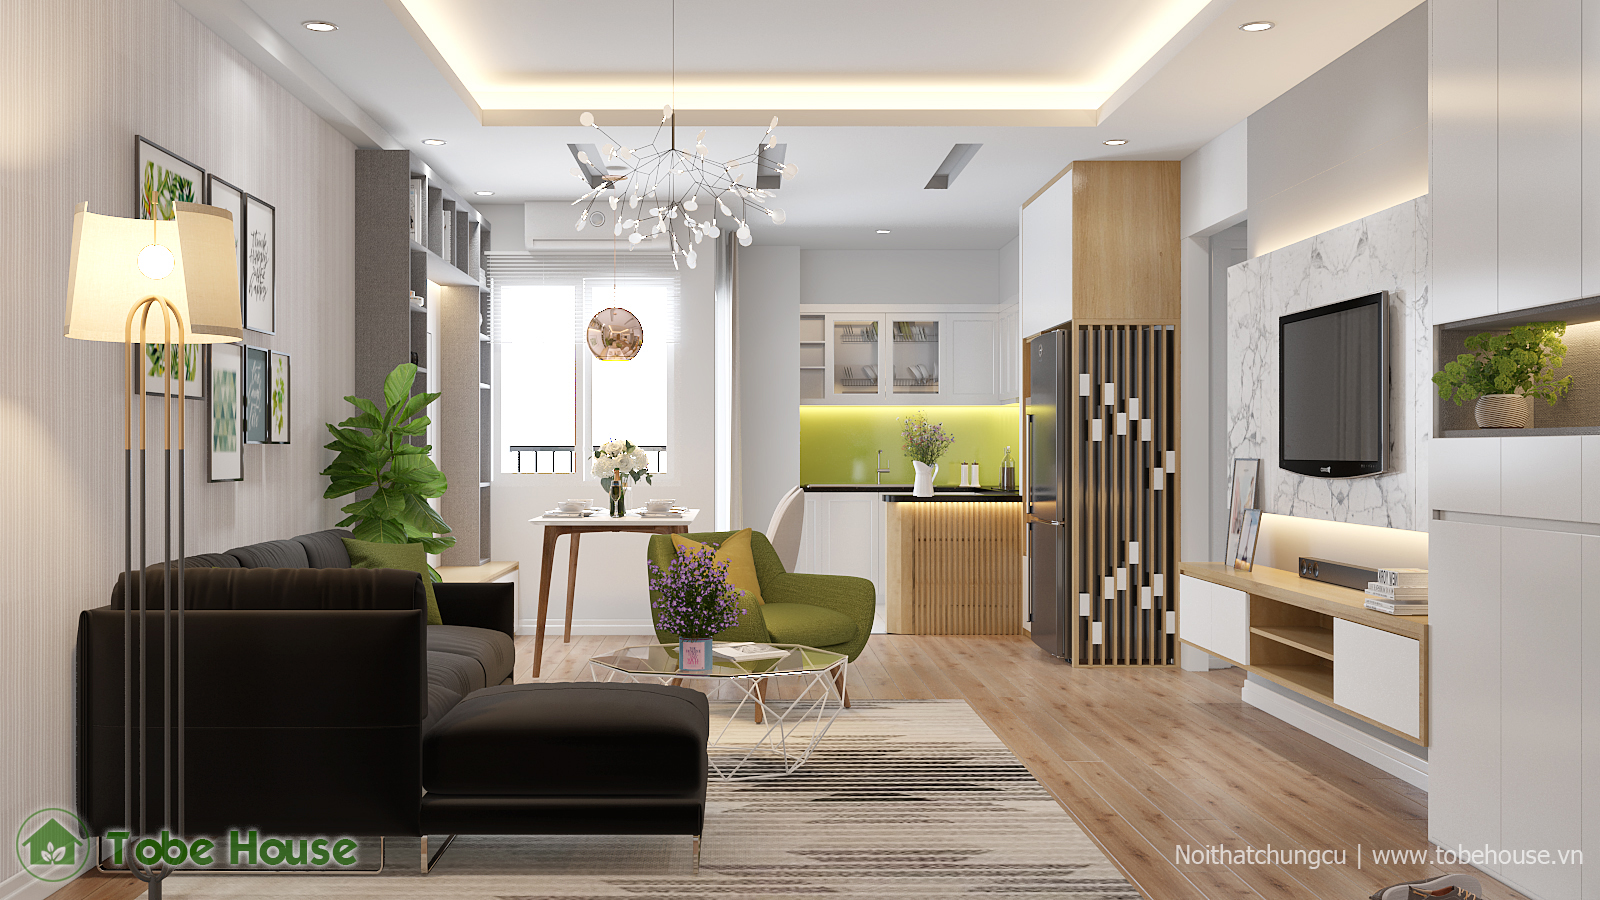 Thiết kế nội thất chung cư Green House: Với khu chung cư cao cấp Green House, thiết kế nội thất luôn là yếu tố quan trọng trong việc tạo nên không gian sống đẳng cấp. Chúng tôi cam kết sẽ đem đến cho quý khách hàng những sản phẩm thiết kế nội thất chất lượng nhất.